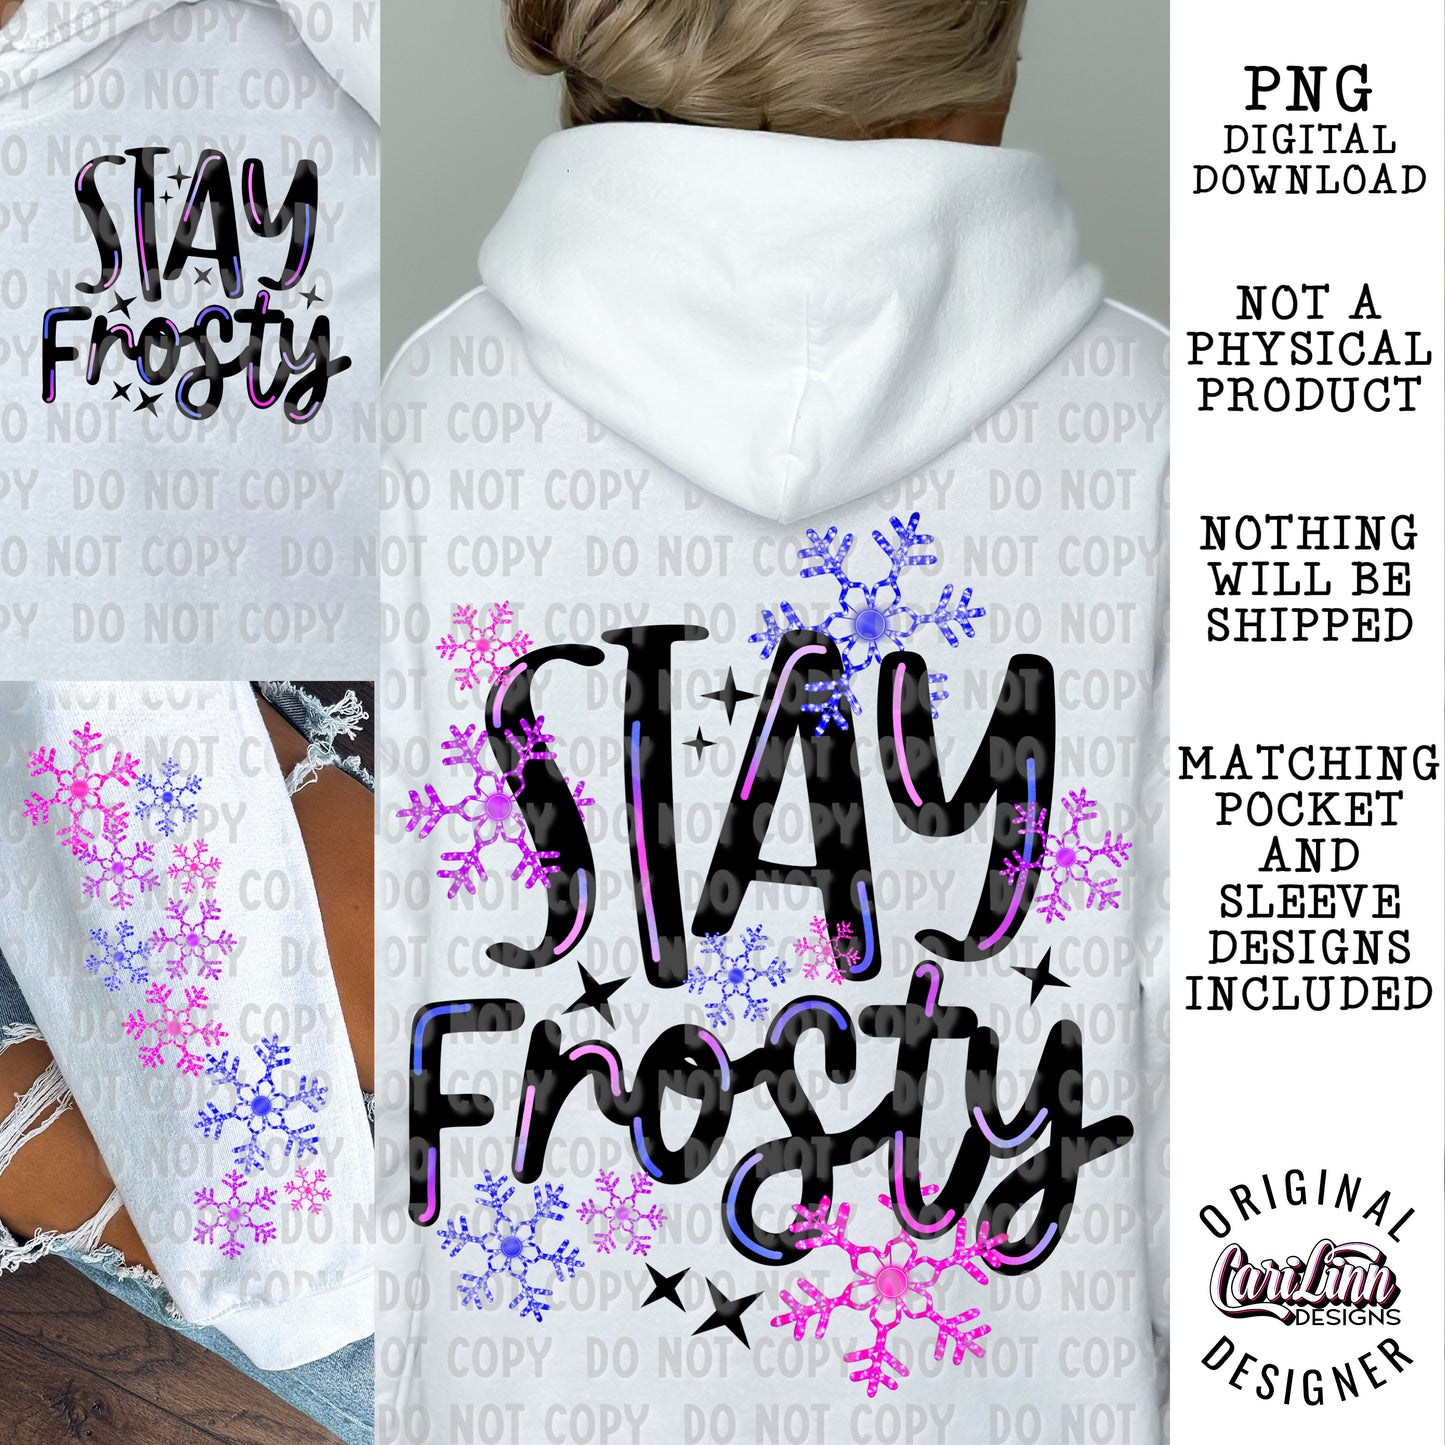 Stay Frosty Bundle, Original Designer, PNG Digital Download for Sublimation, DTF, DTG